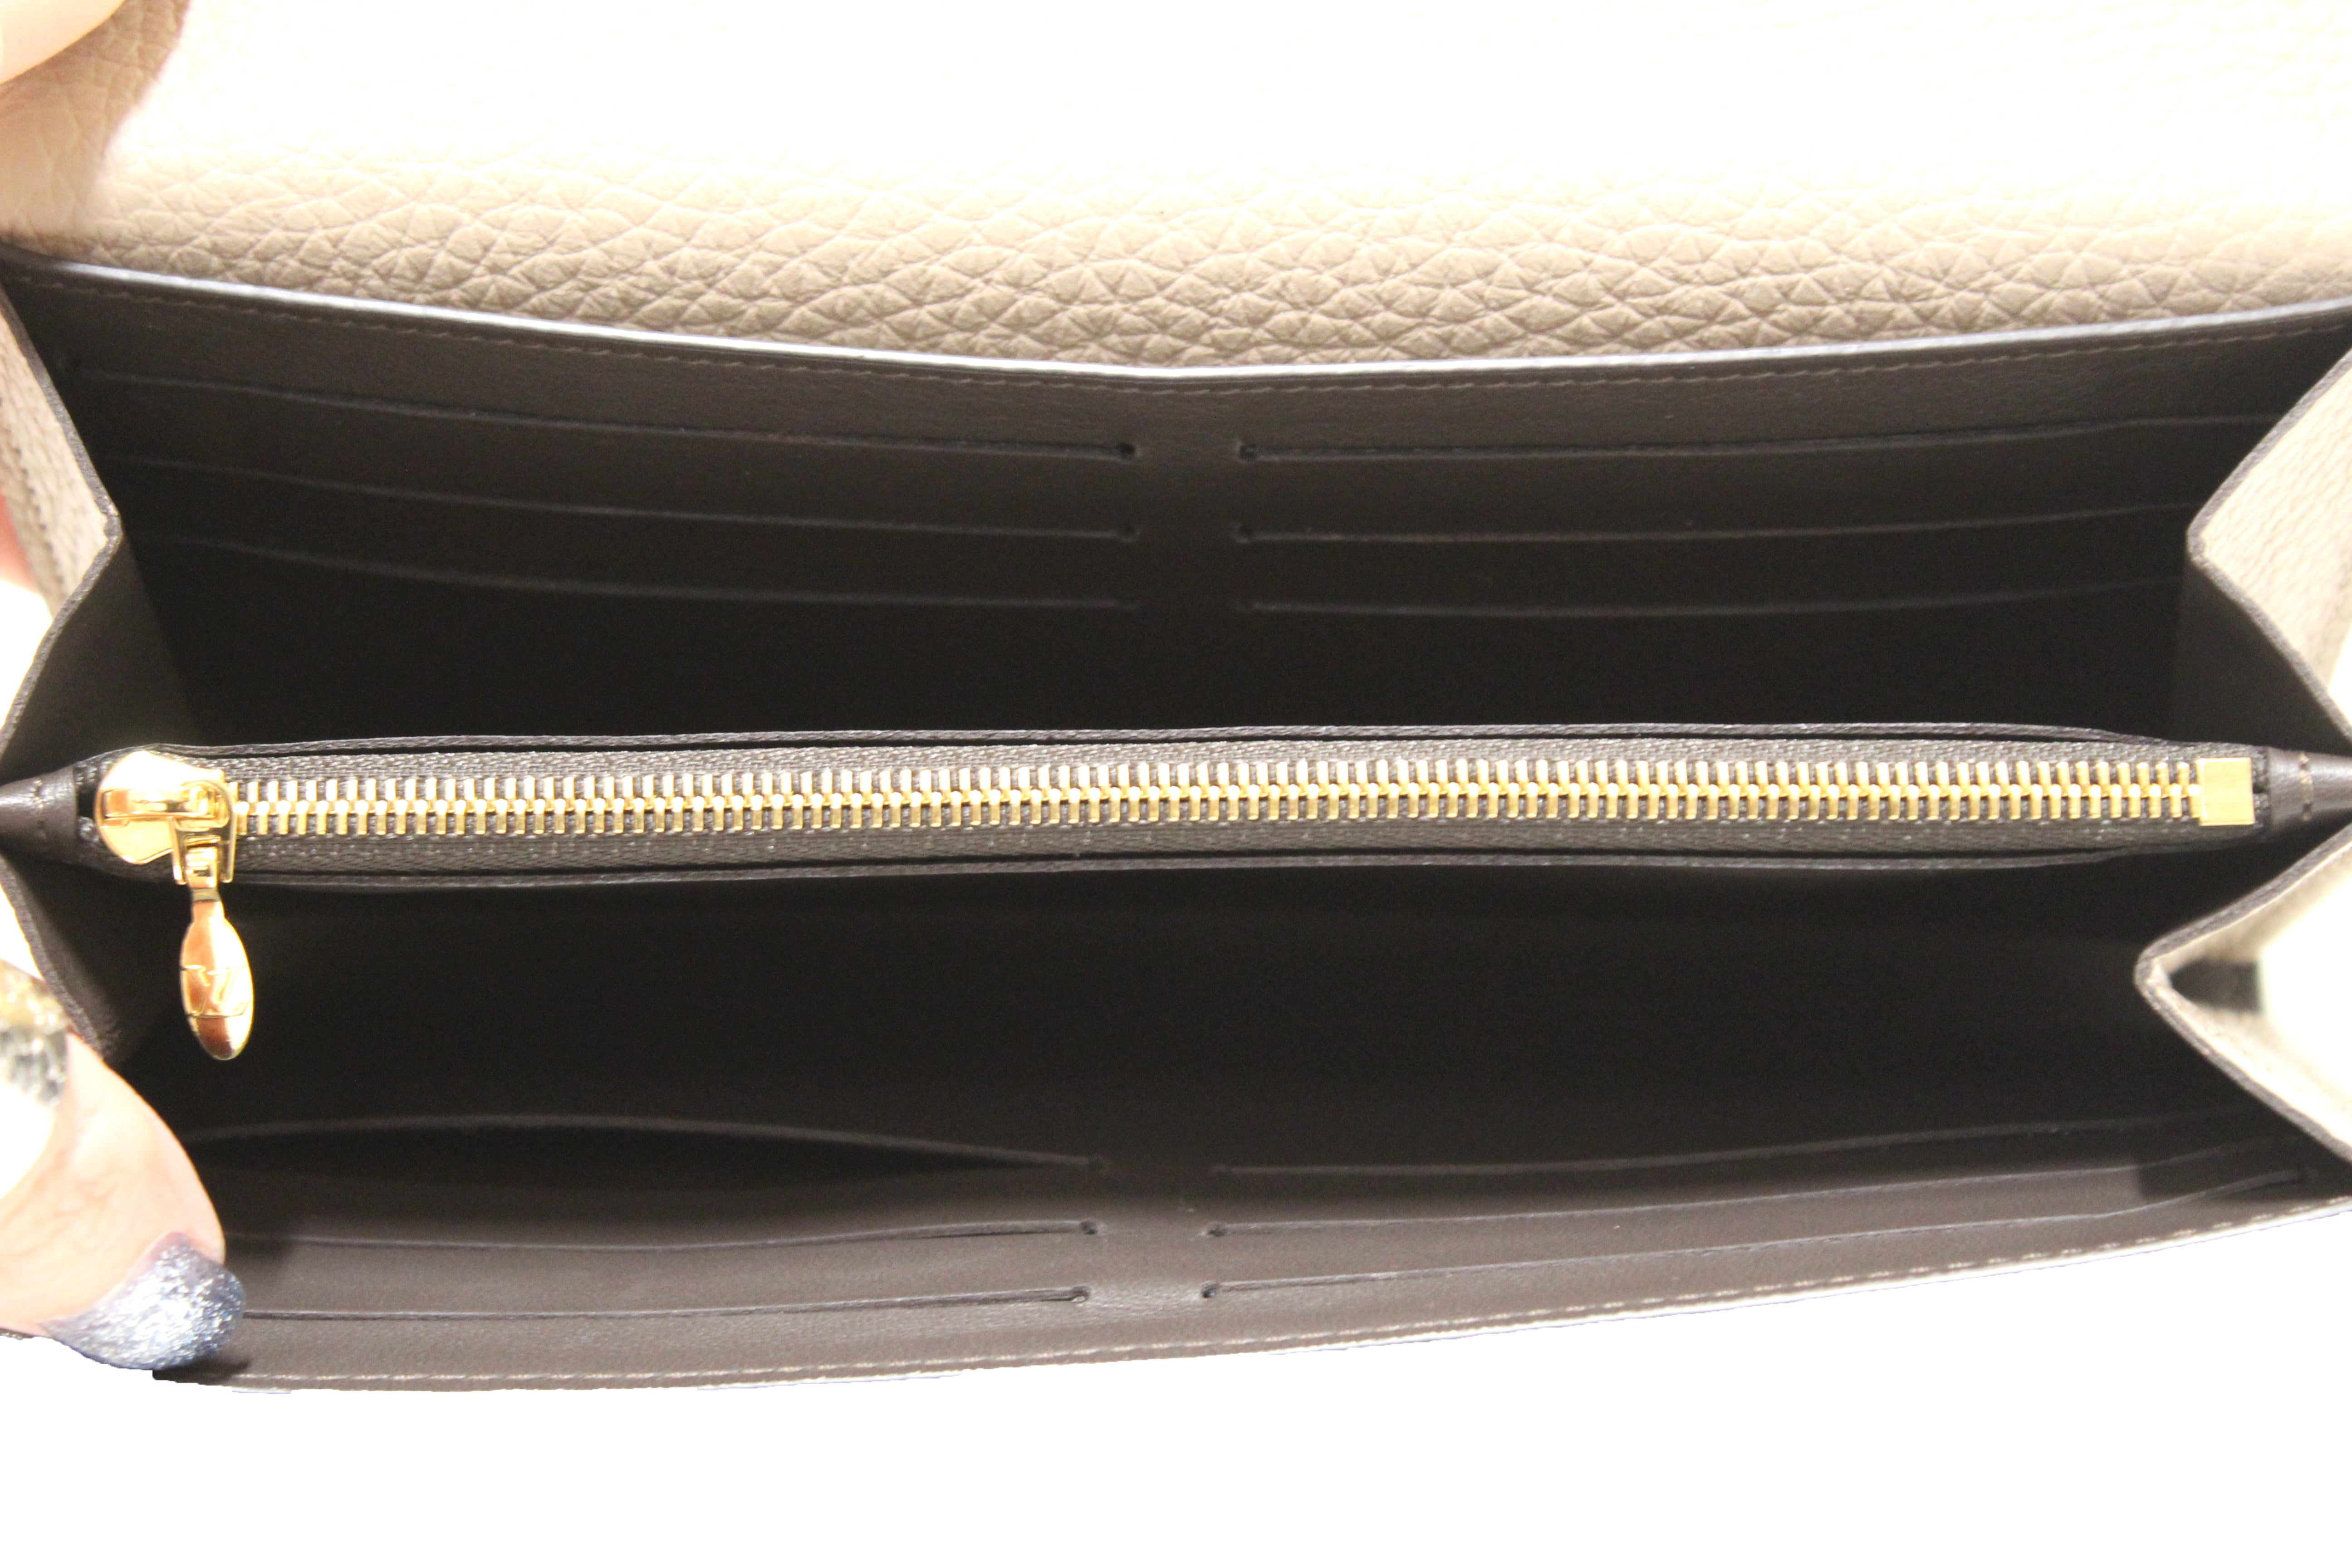 Louis Vuitton Pebble Taurillon Leather Capucines Wallet Auction